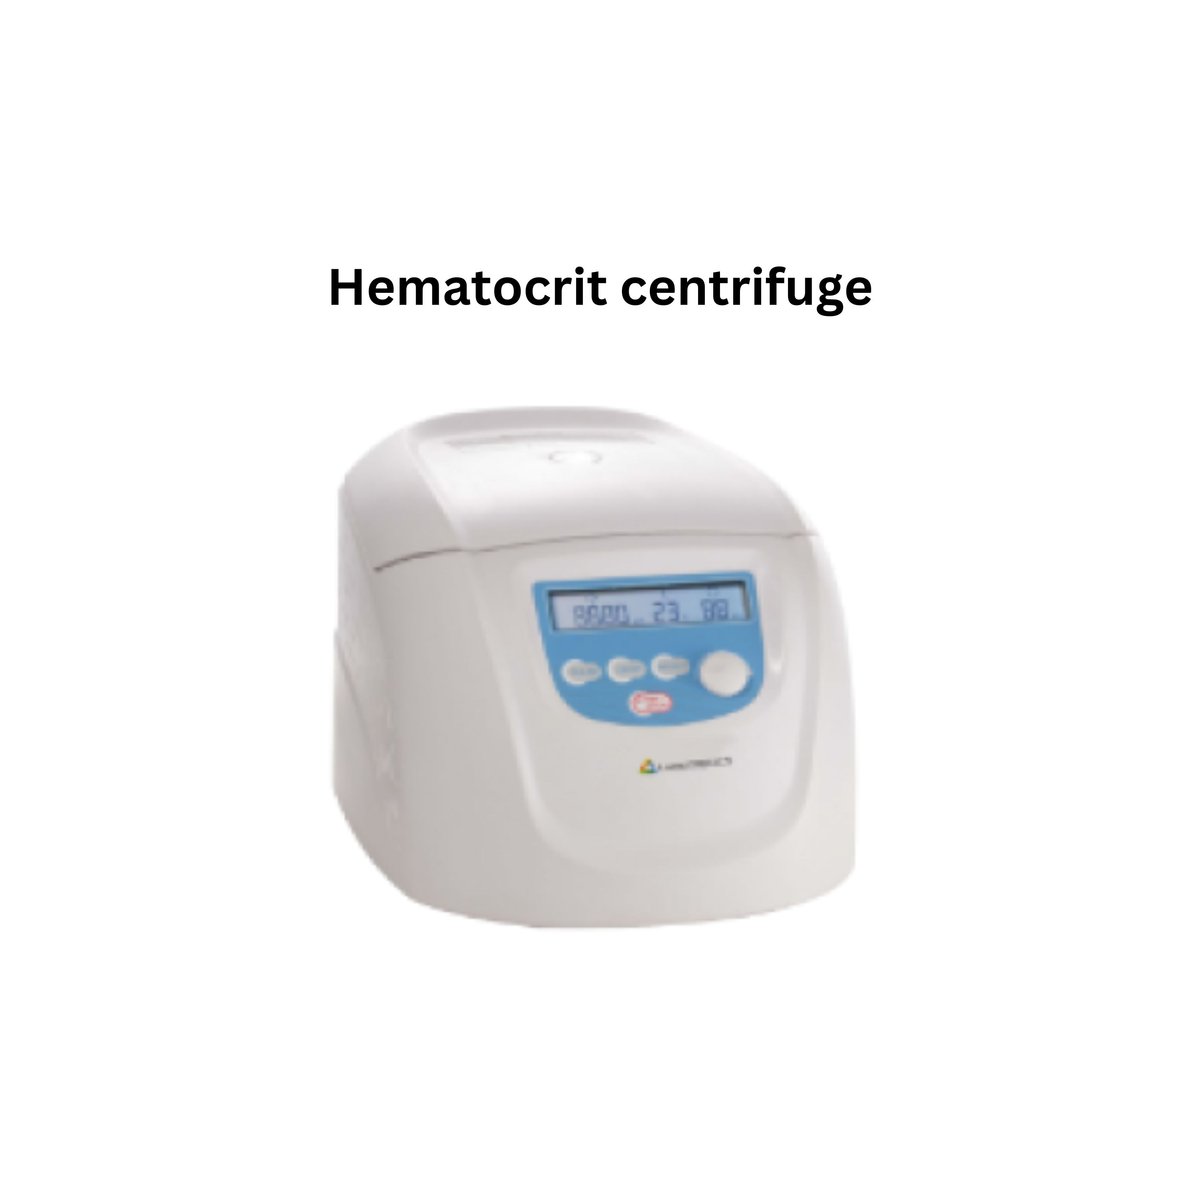 Hematocrit centrifuge.jpg